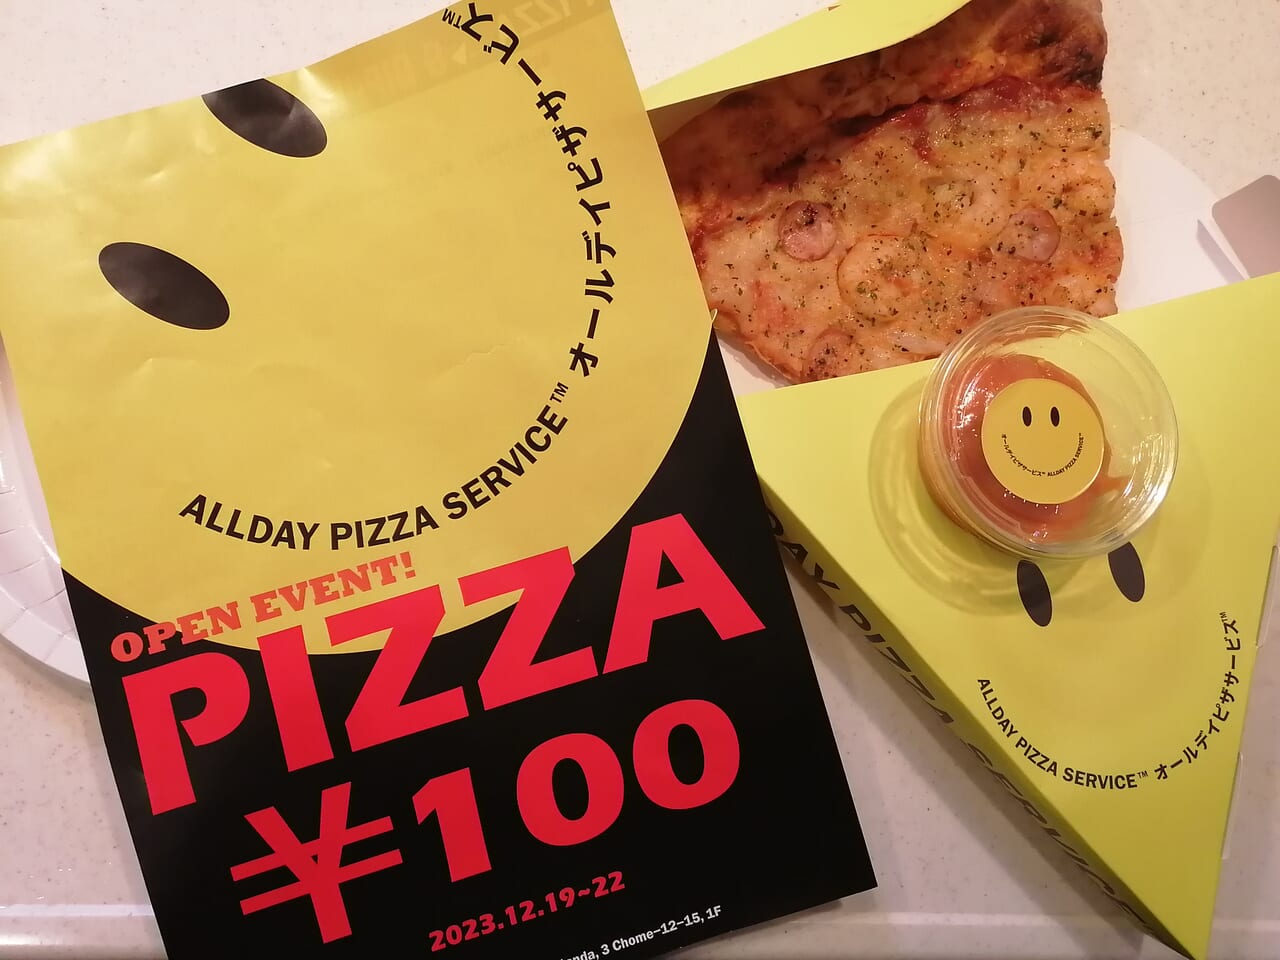 ALLDAY PIZZA SERVICE目黒不動前店